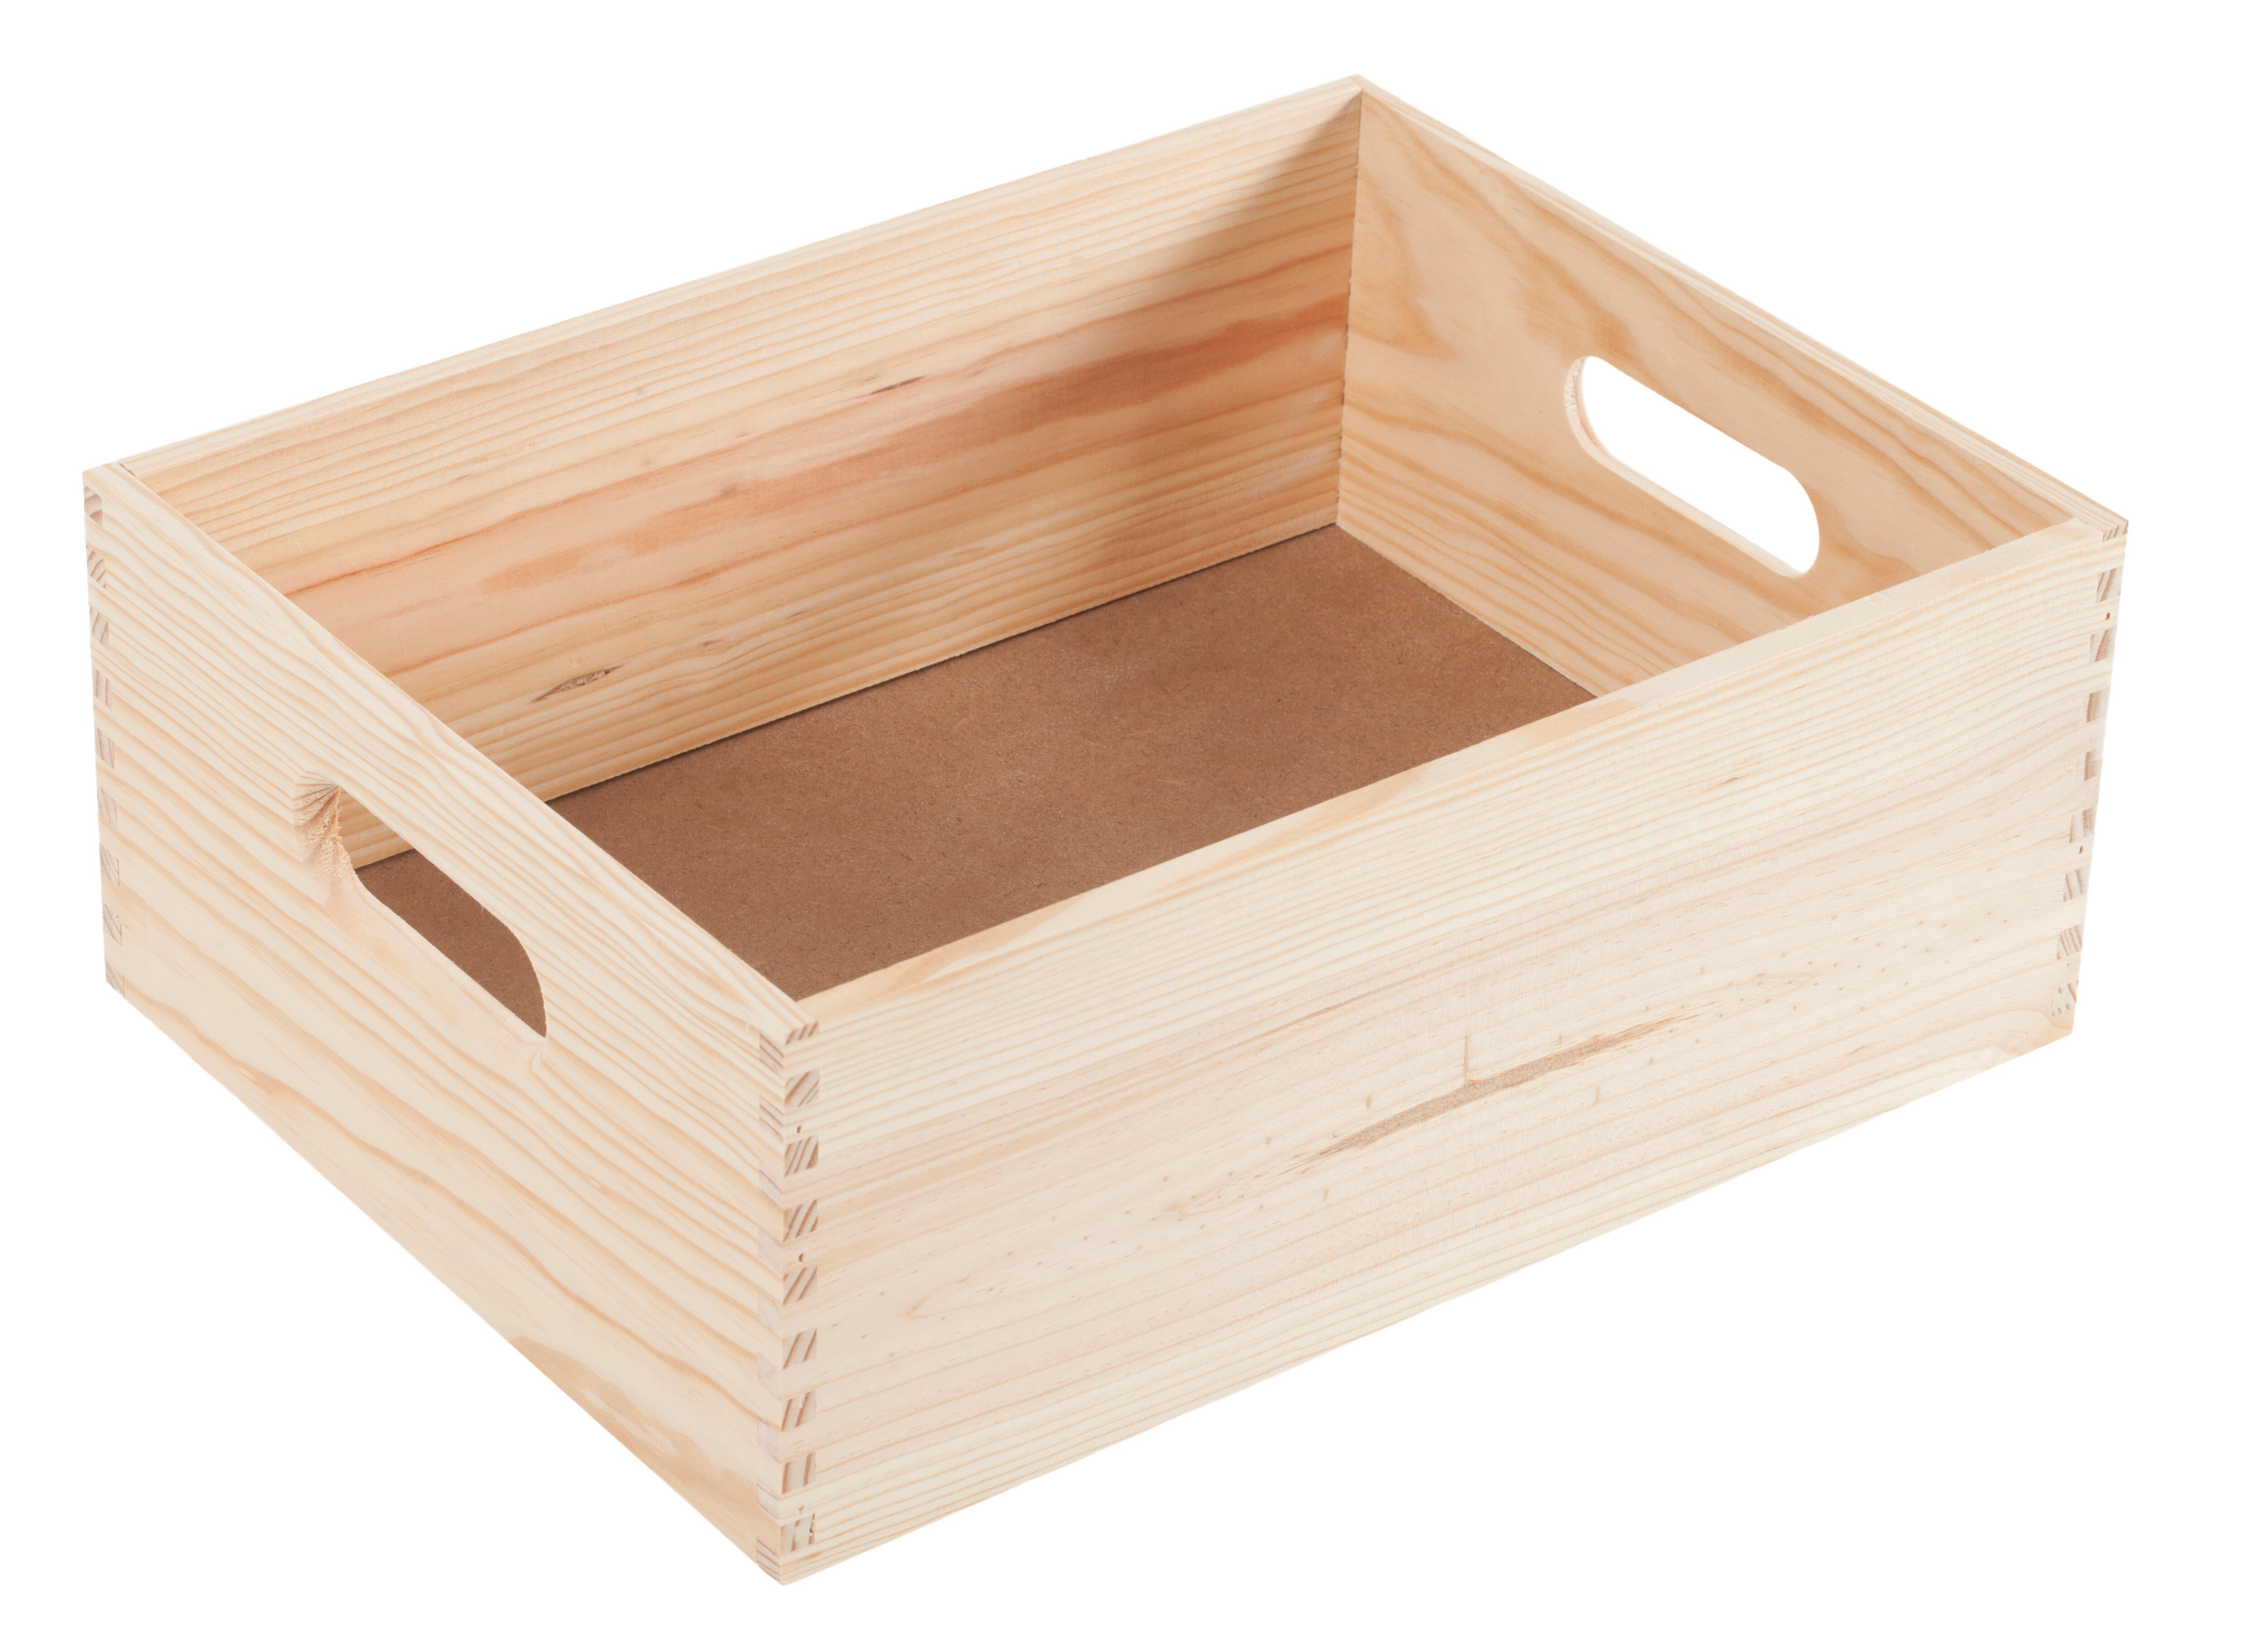 Caja Multiuso de madera con Tapa Corrediza Nº2 Fime